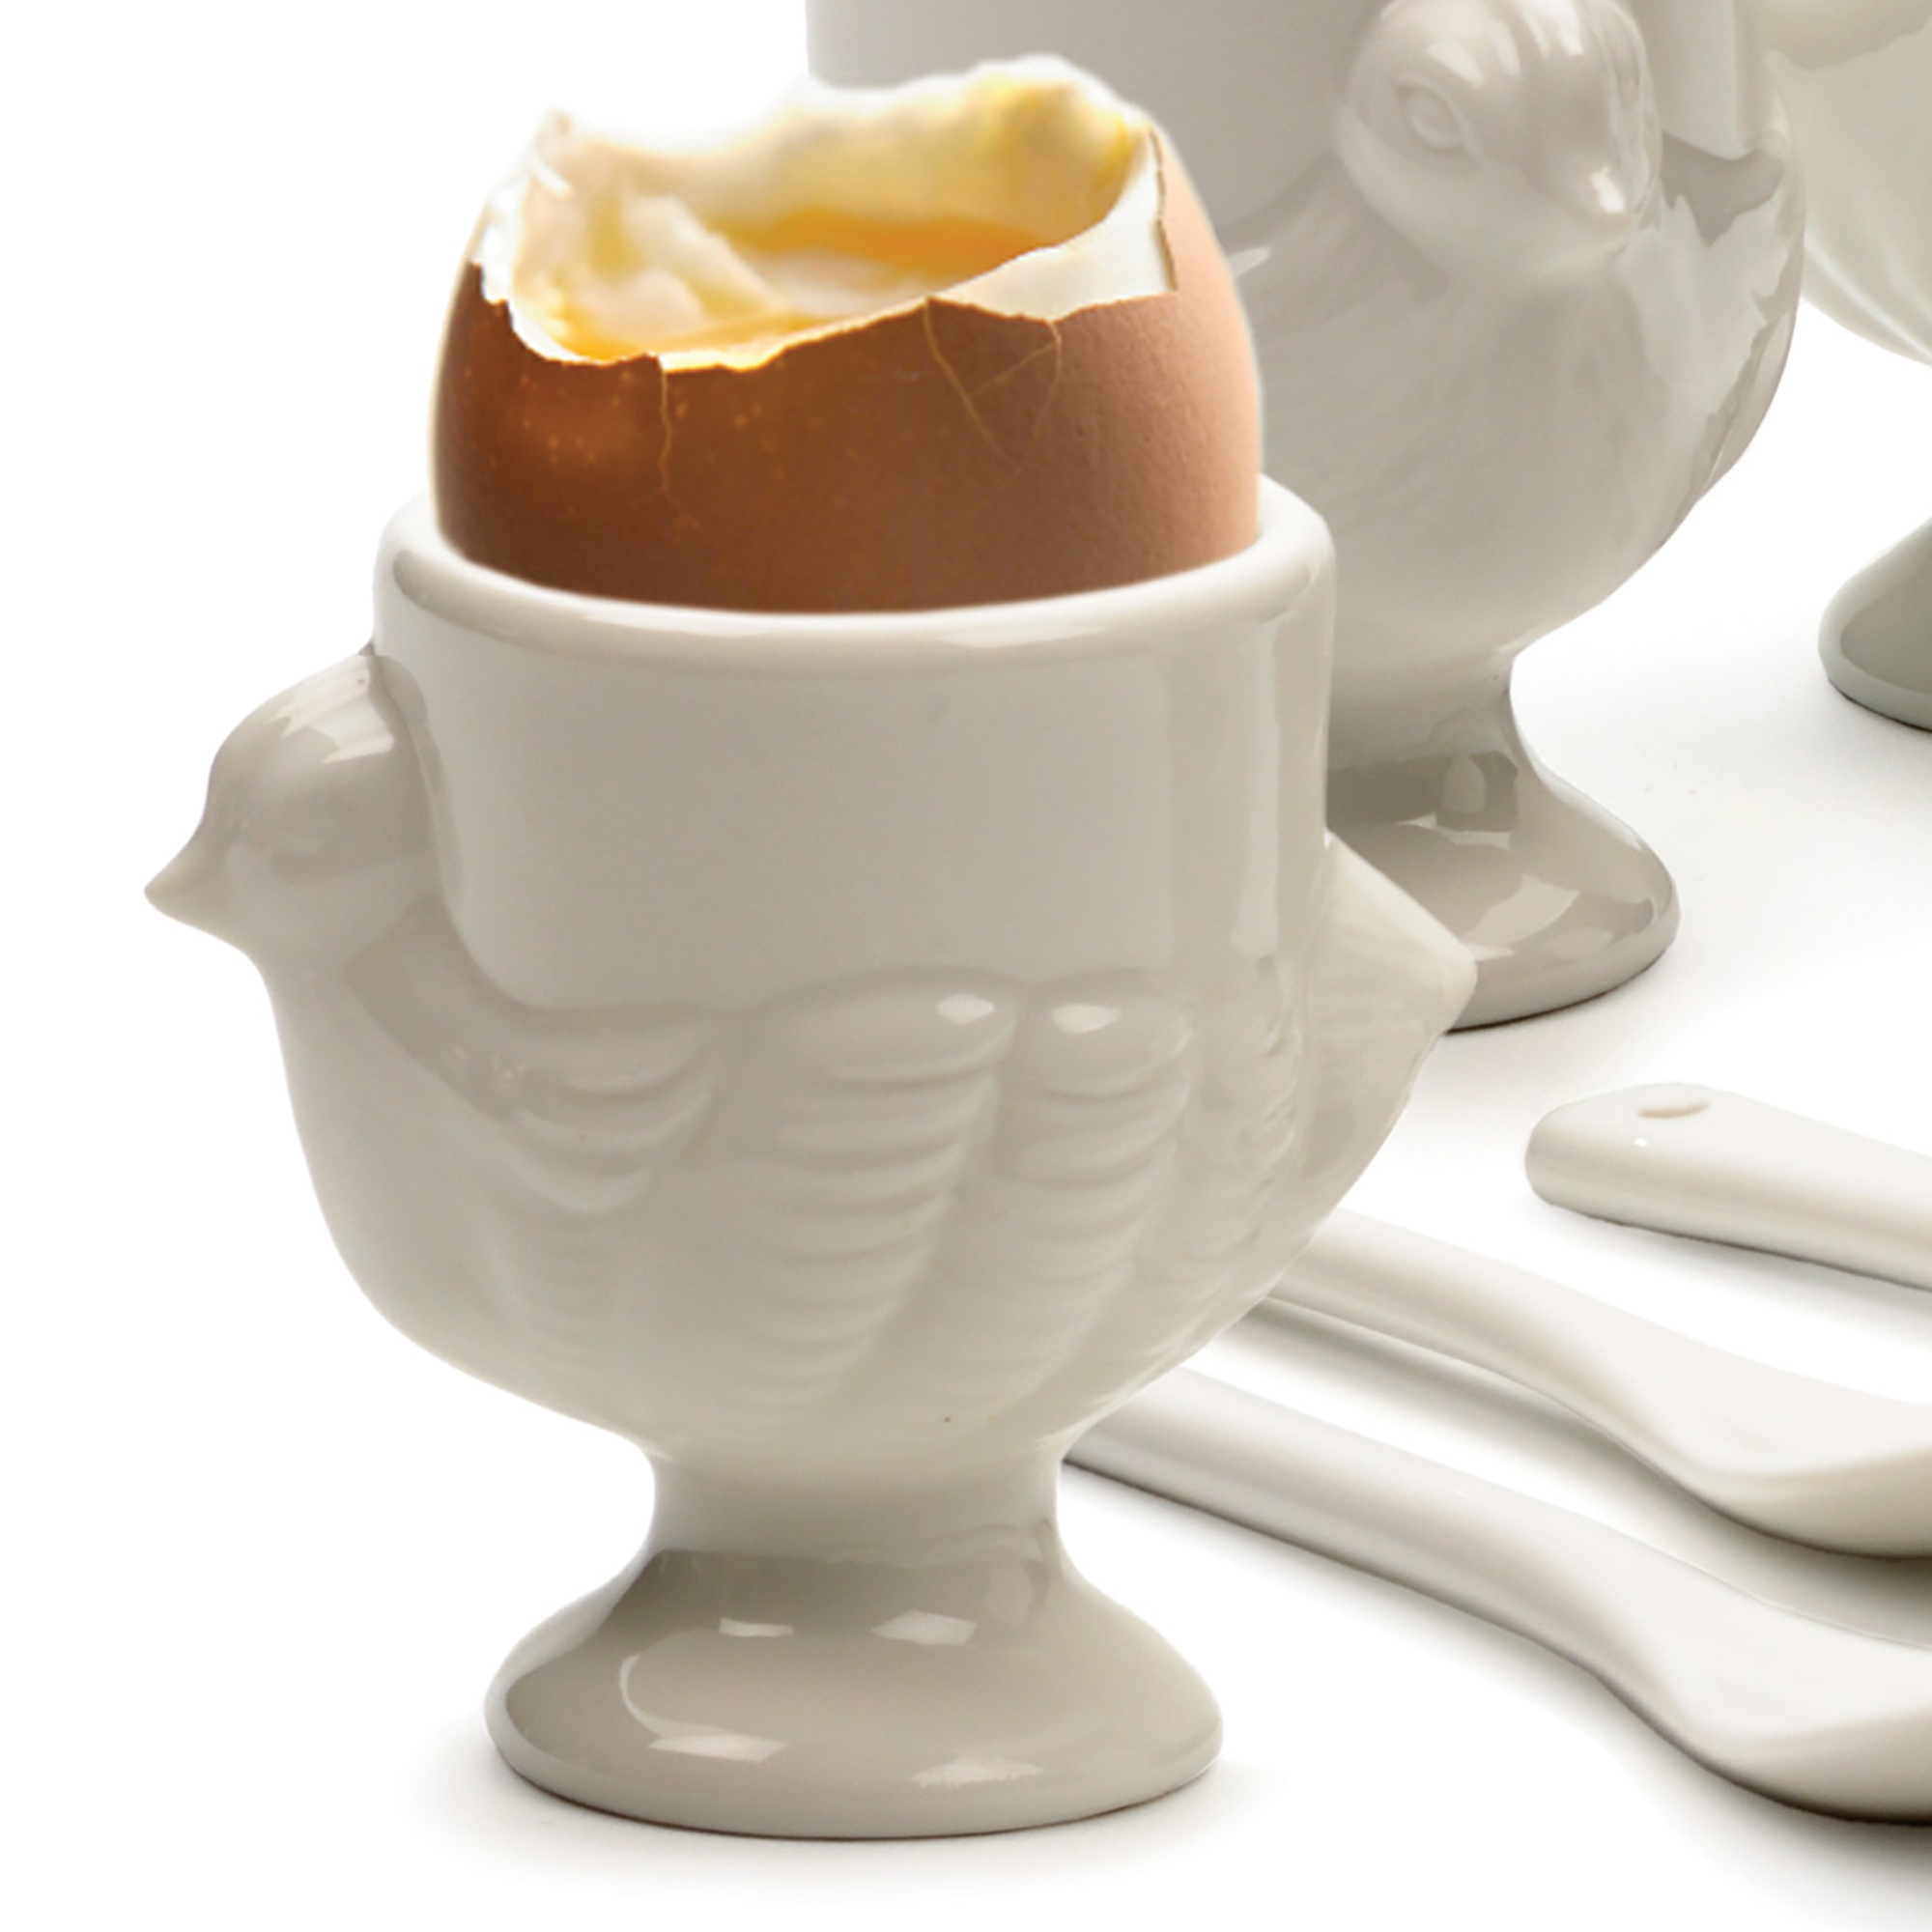 Porcelain Egg Cups & Spoons Set | RSVP International Inc.